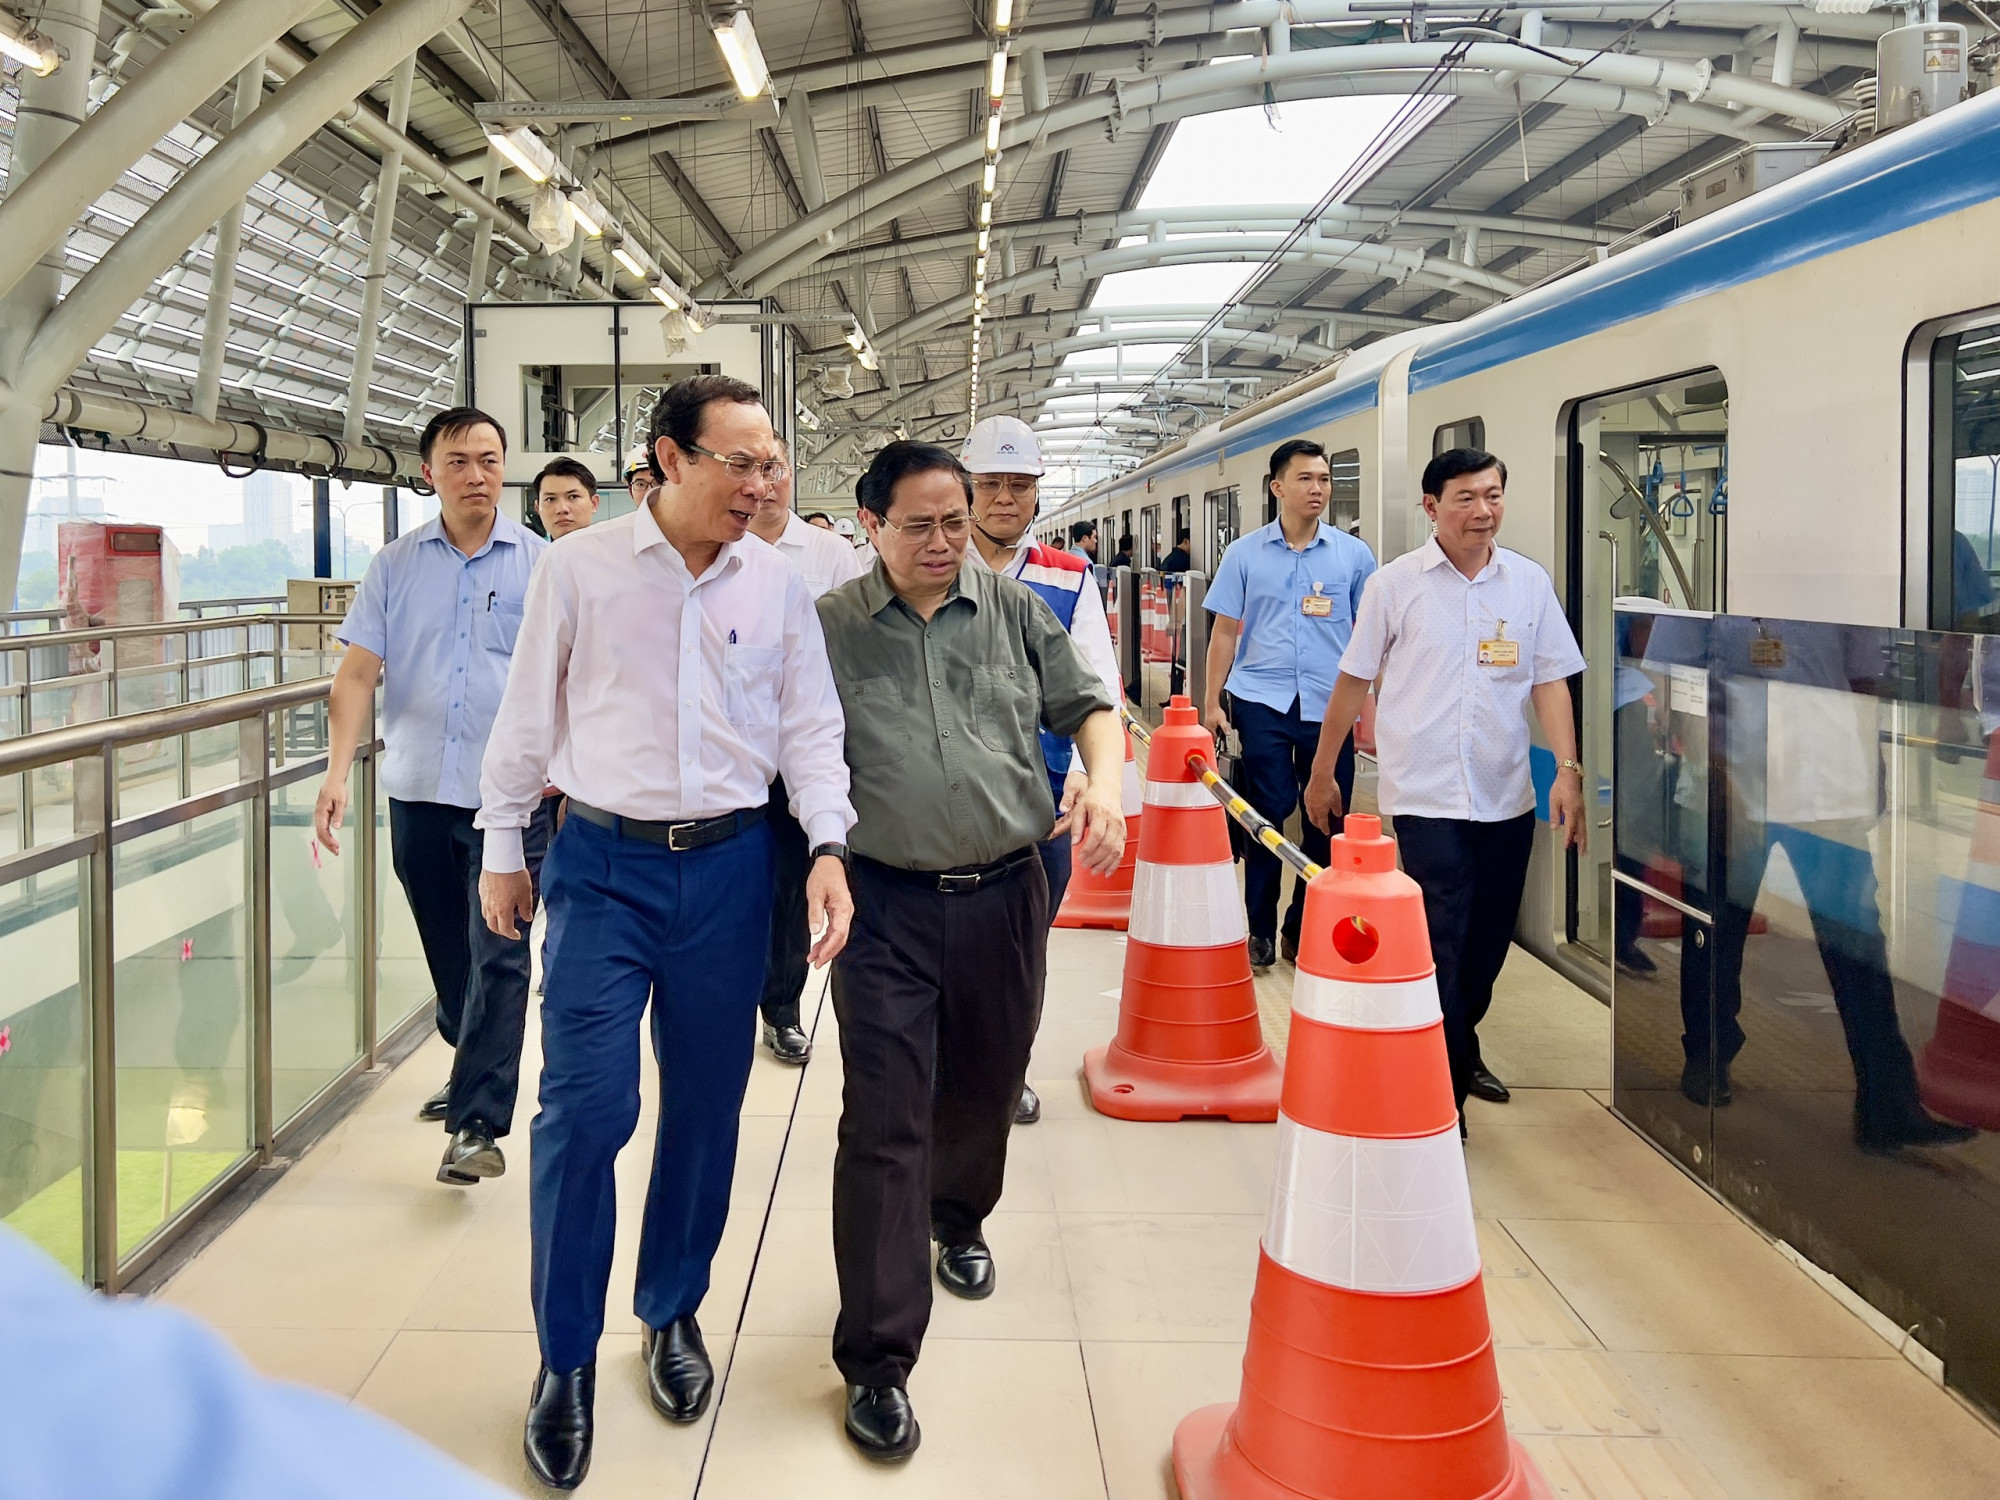 Bí thư Thành ủy TPHCM Nguyễn Văn Nên tại chuyến đi thử nghiệm tuyến metro 1 ngày 15/4 của Thủ tướng Chính phủ Phạm Minh Chính cùng đoàn công tác Trung ương vào làm việc tại TPHCM